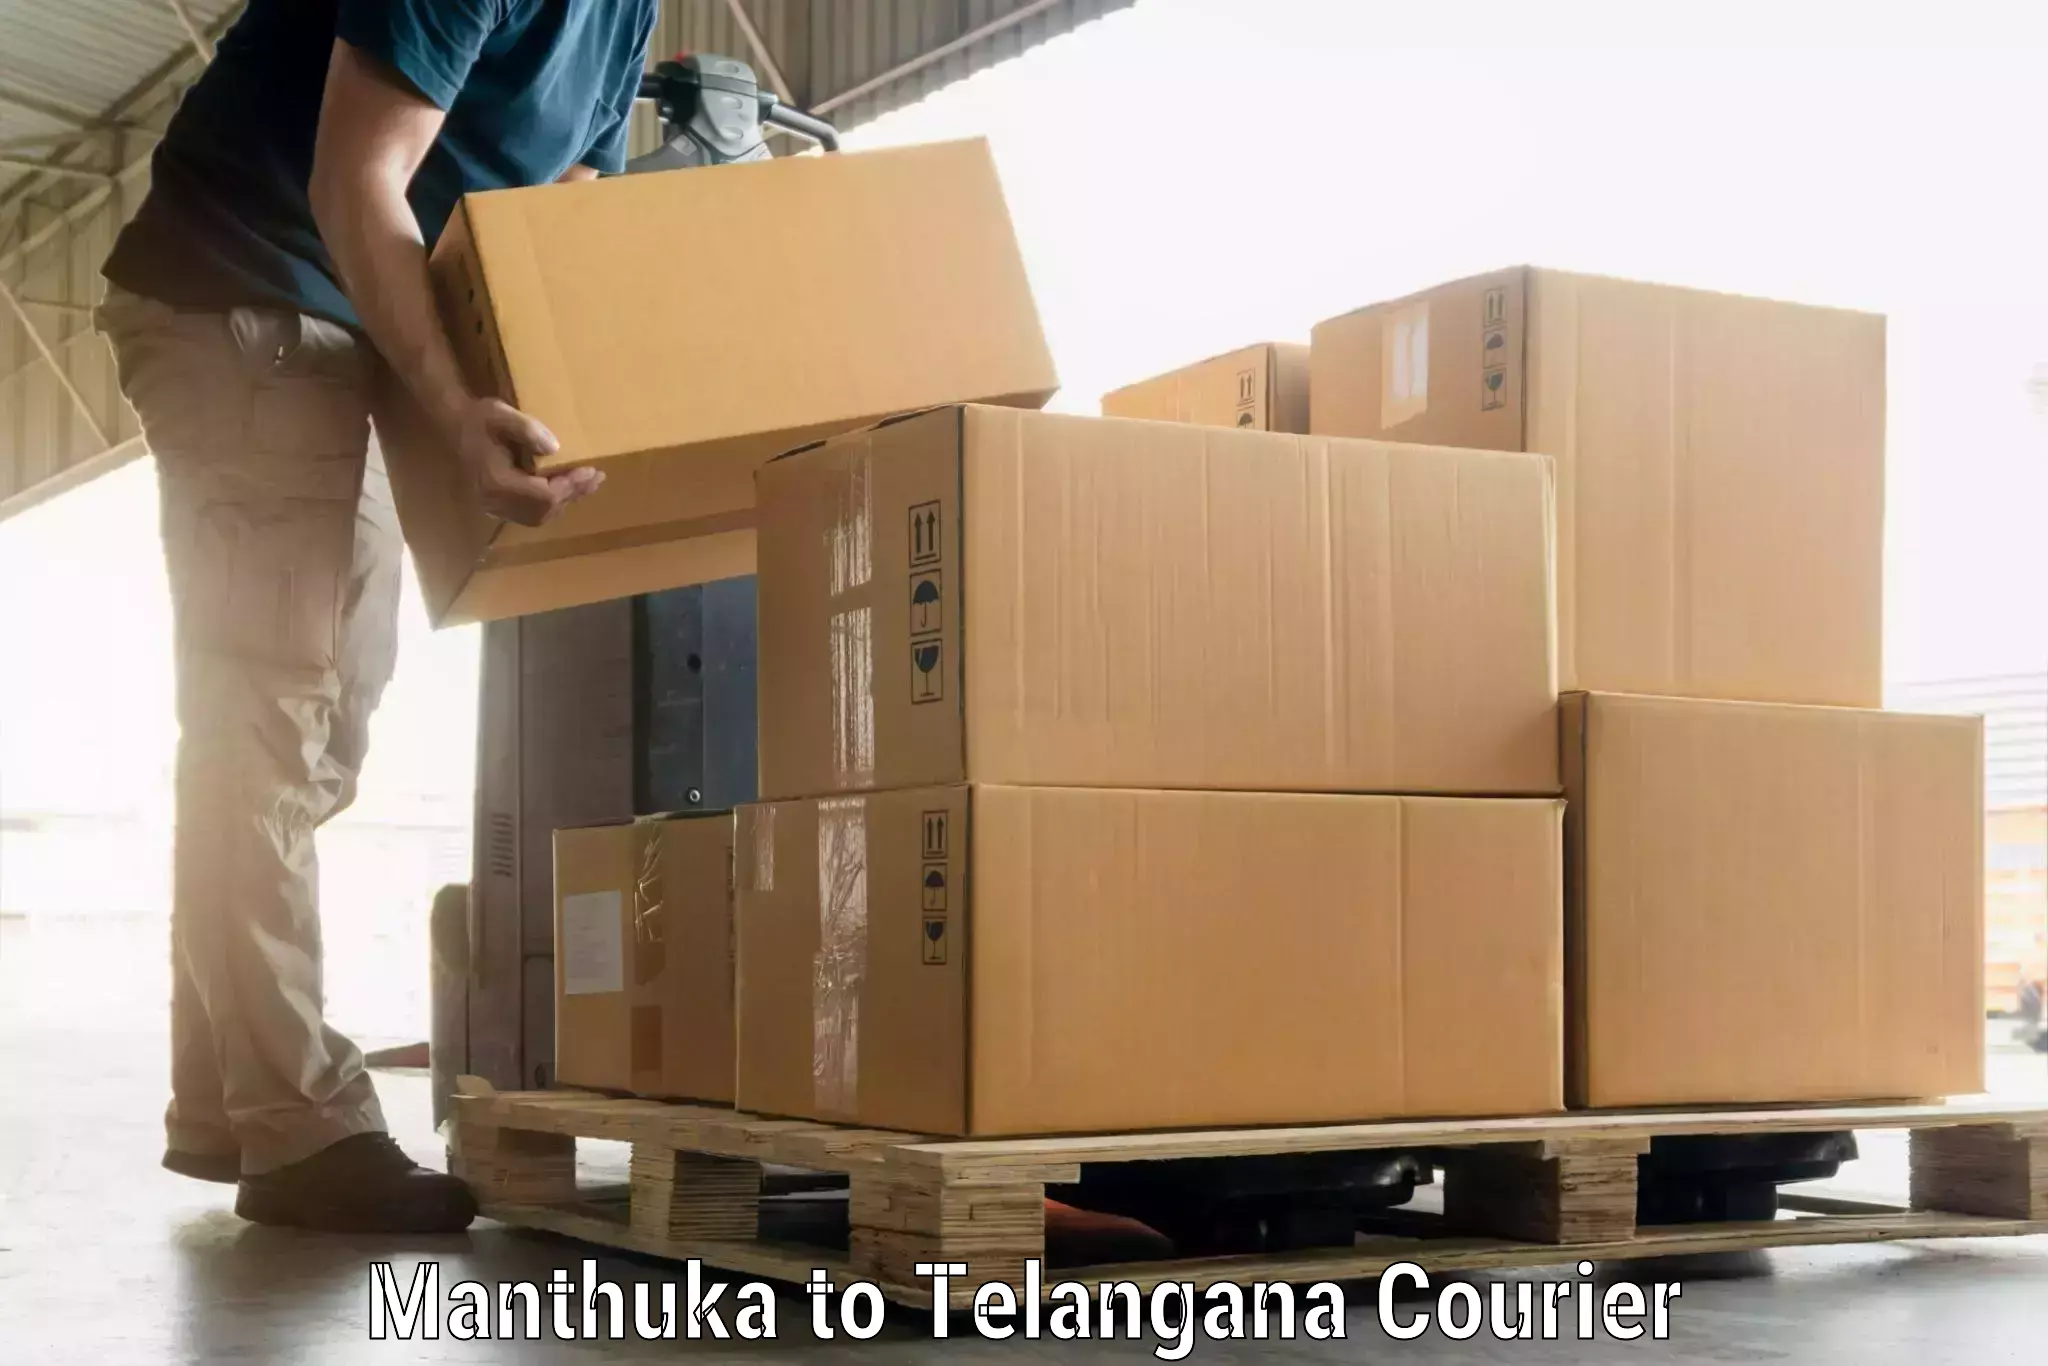 Holiday season luggage delivery Manthuka to Manthani